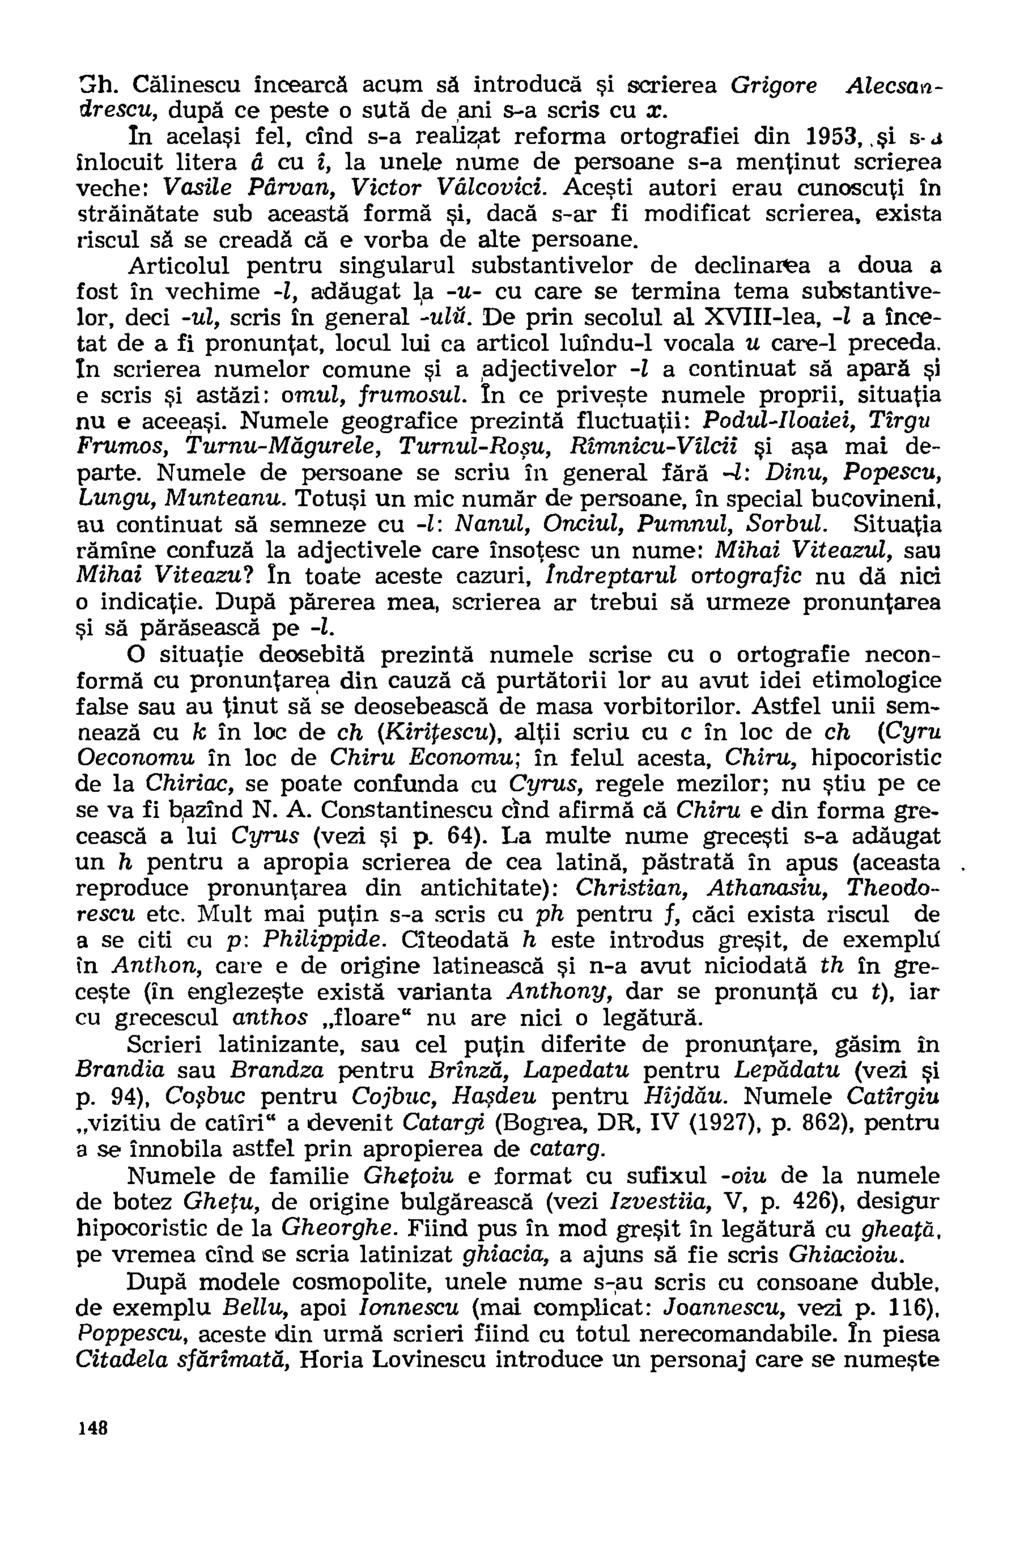 13 h. Calinescu incearca acum sa introducd si scrierea Grigore Alecsandrescu, dupd ce peste o suta de ani s-a scris cu x. In acelasi fel, cind s-a realizat reforma ortografiei din 1953_0.